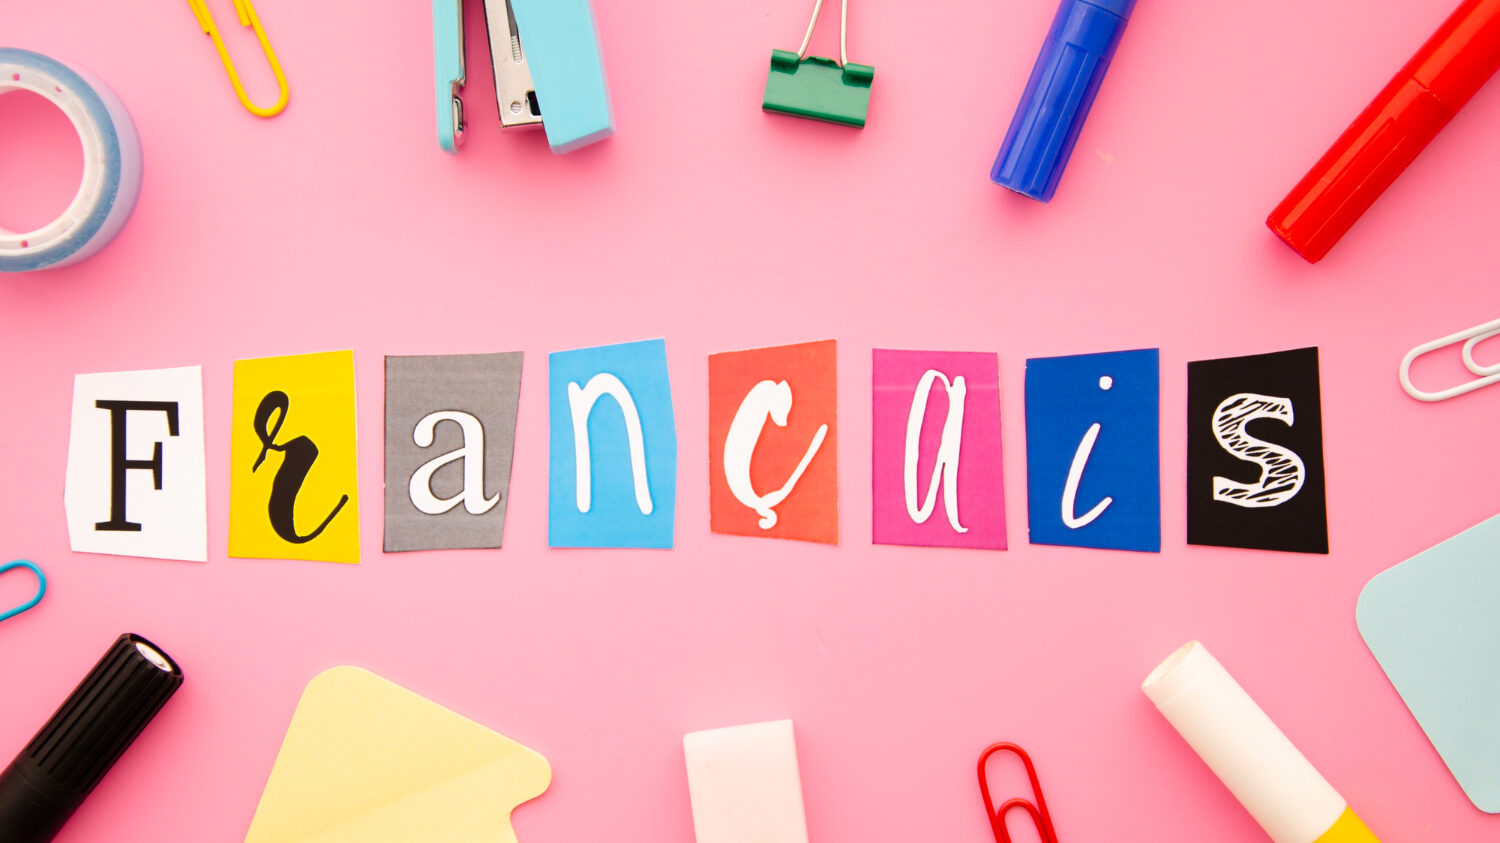 بالفيديو : تعلم حروف اللغة الفرنسية وكيفية نطقها بشكل صحيح